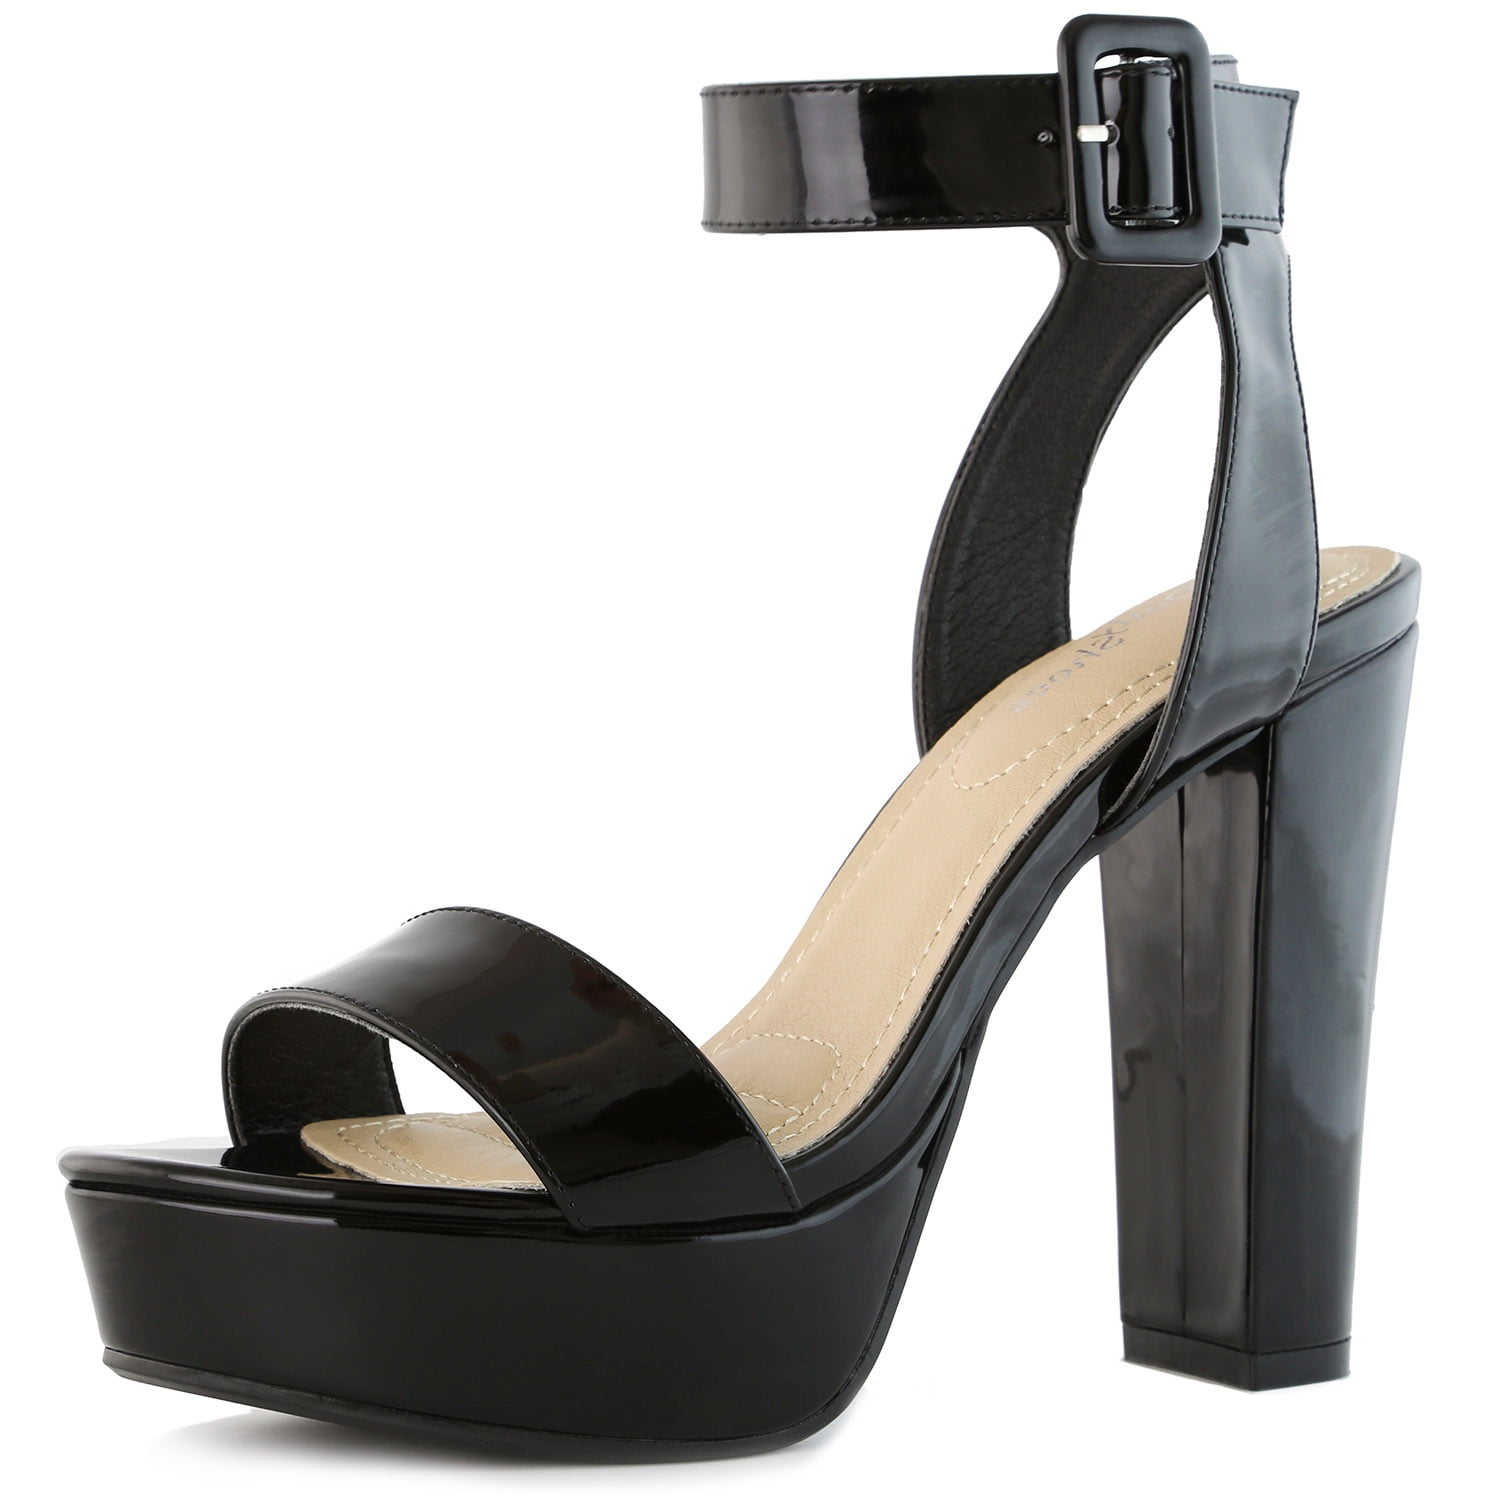 DailyShoes - DailyShoes Women's Women's Chunky Heel Sandal Open Toe ...